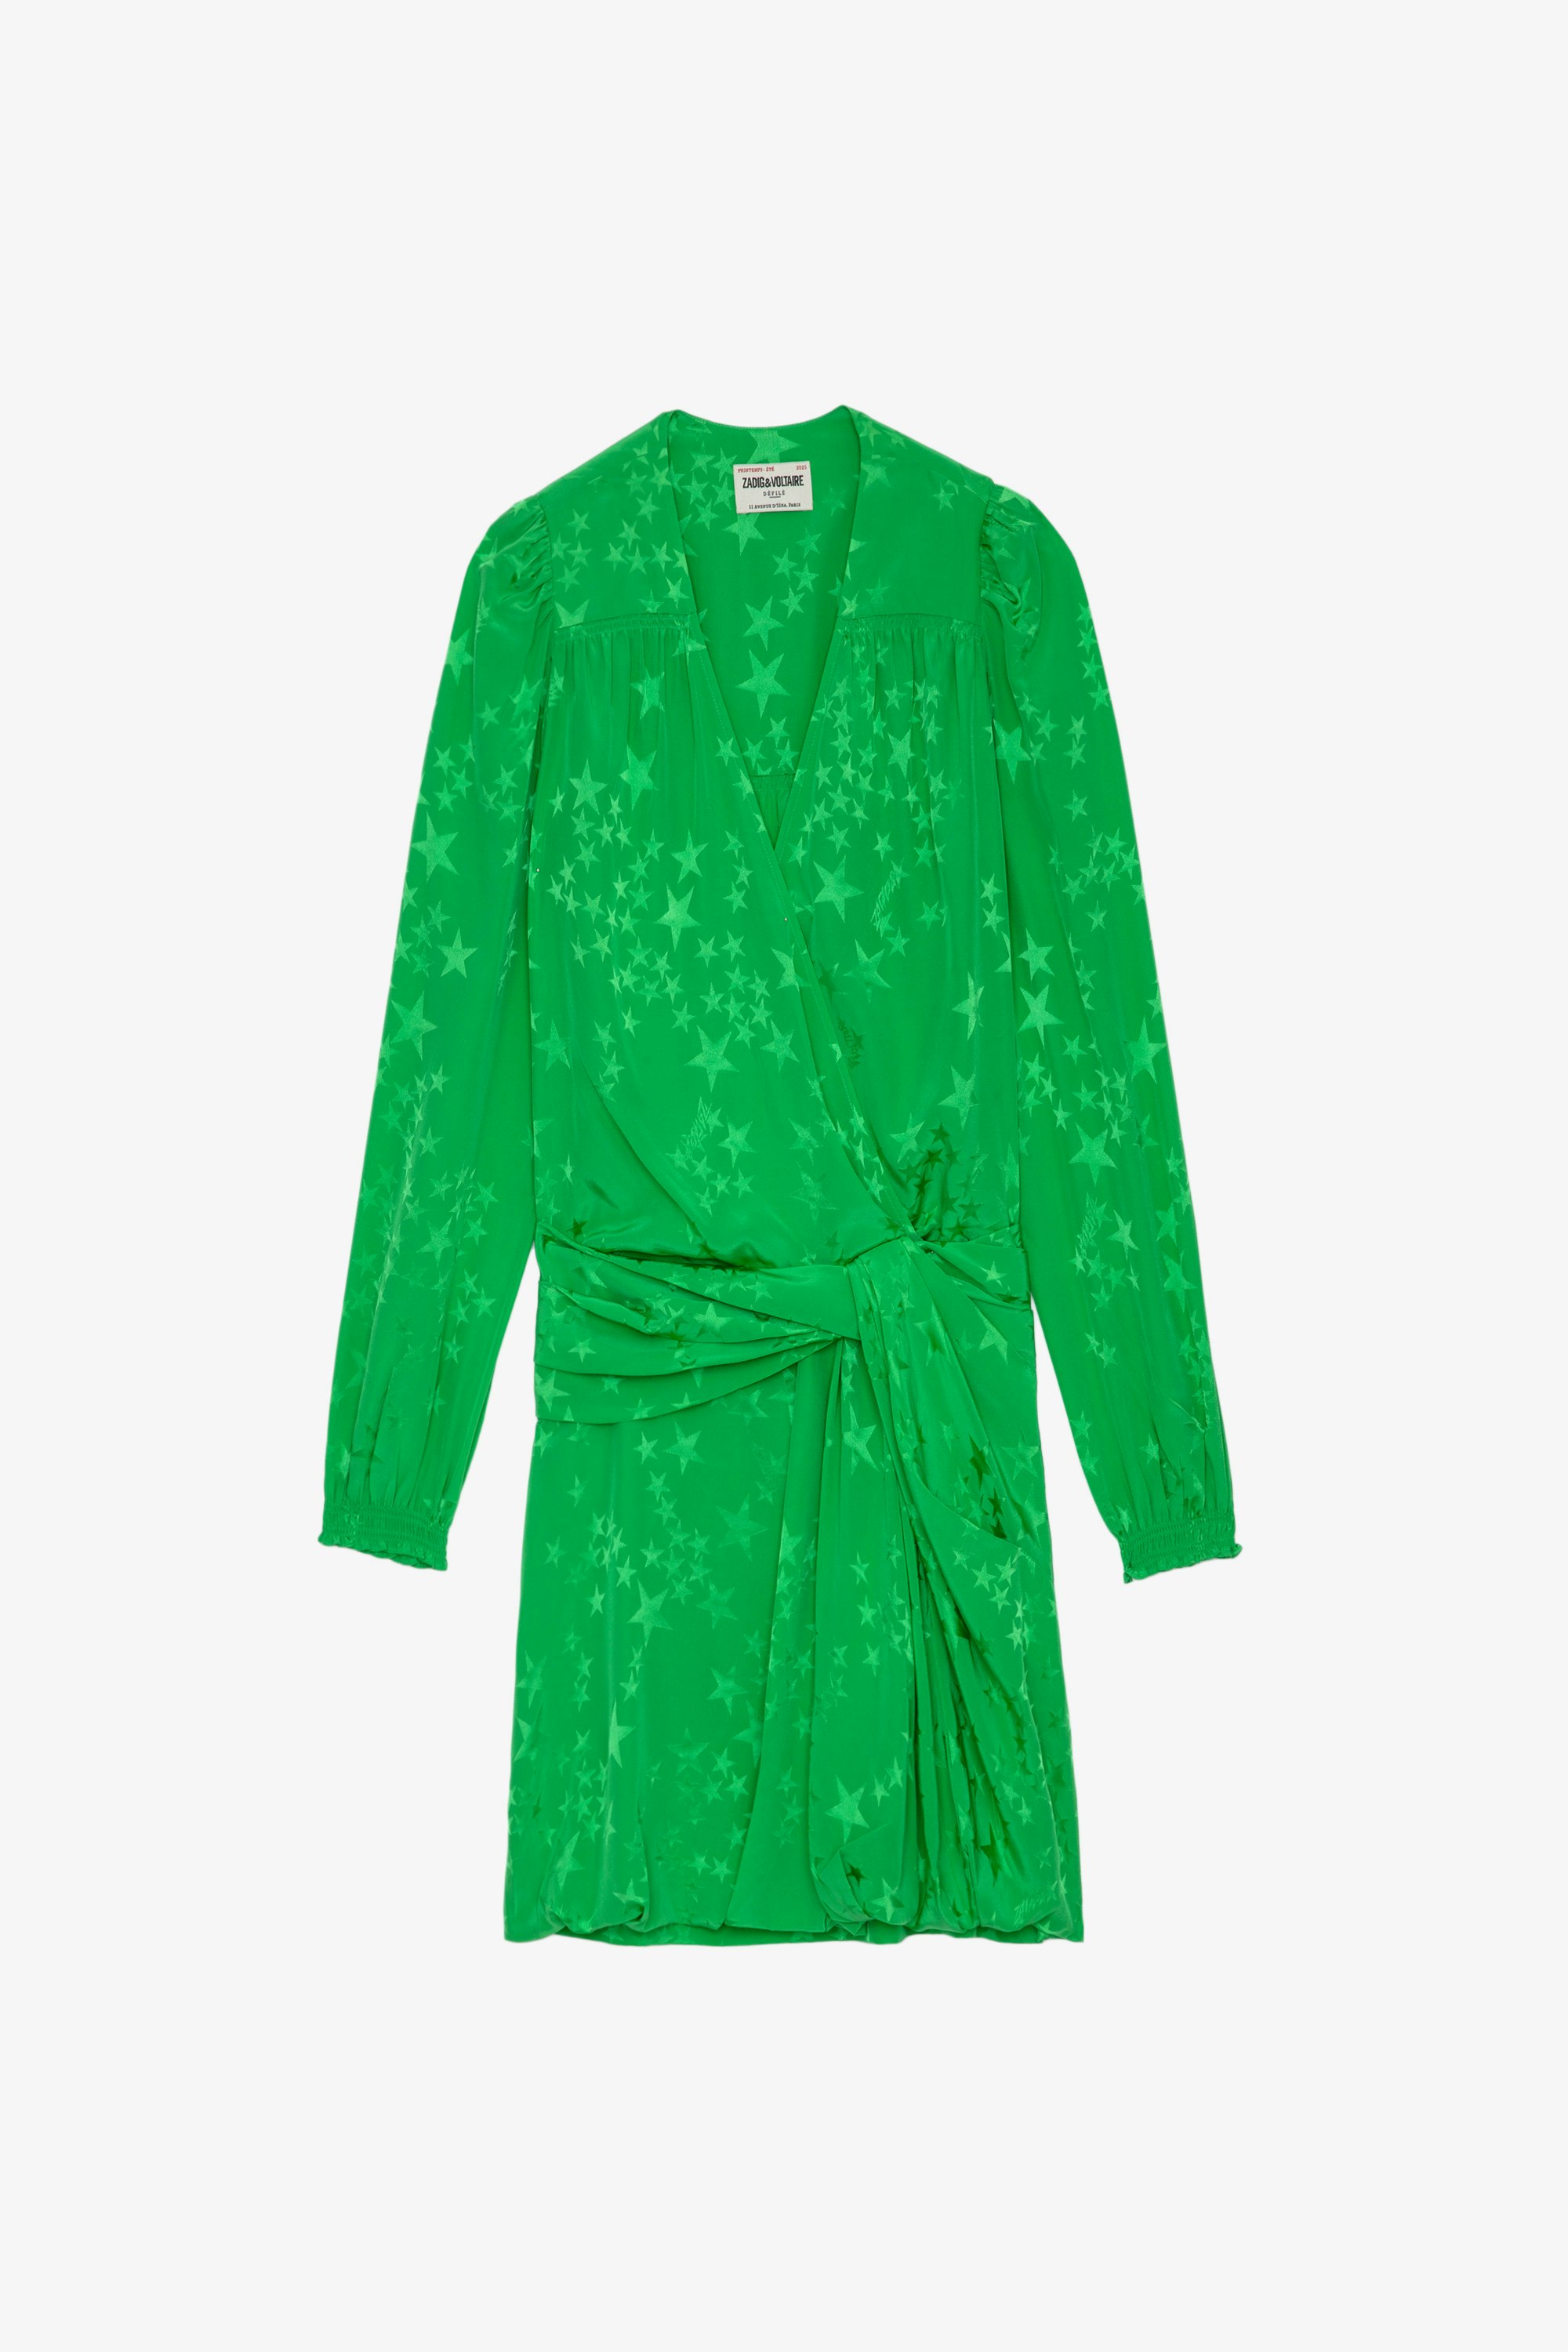 Vestido de seda Recol Jac Vestido corto de jacquard de seda verde manzana con efecto drapeado, decorado con estrellas y atado a la cintura para mujer